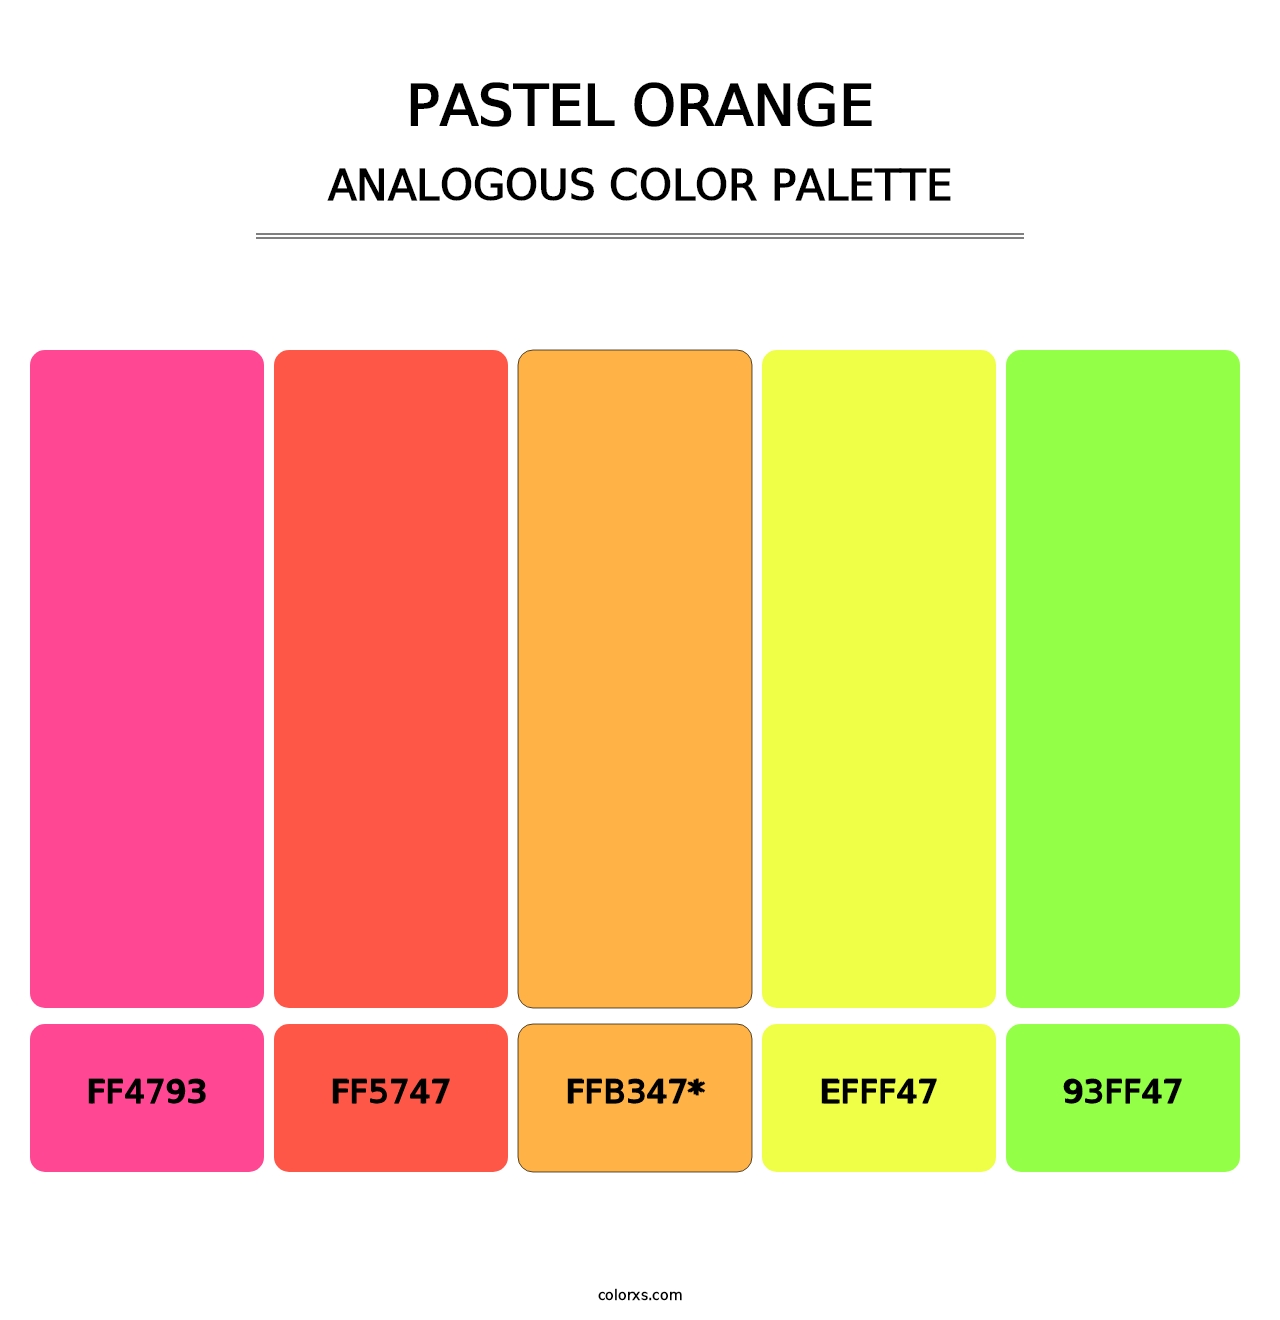 Pastel Orange - Analogous Color Palette